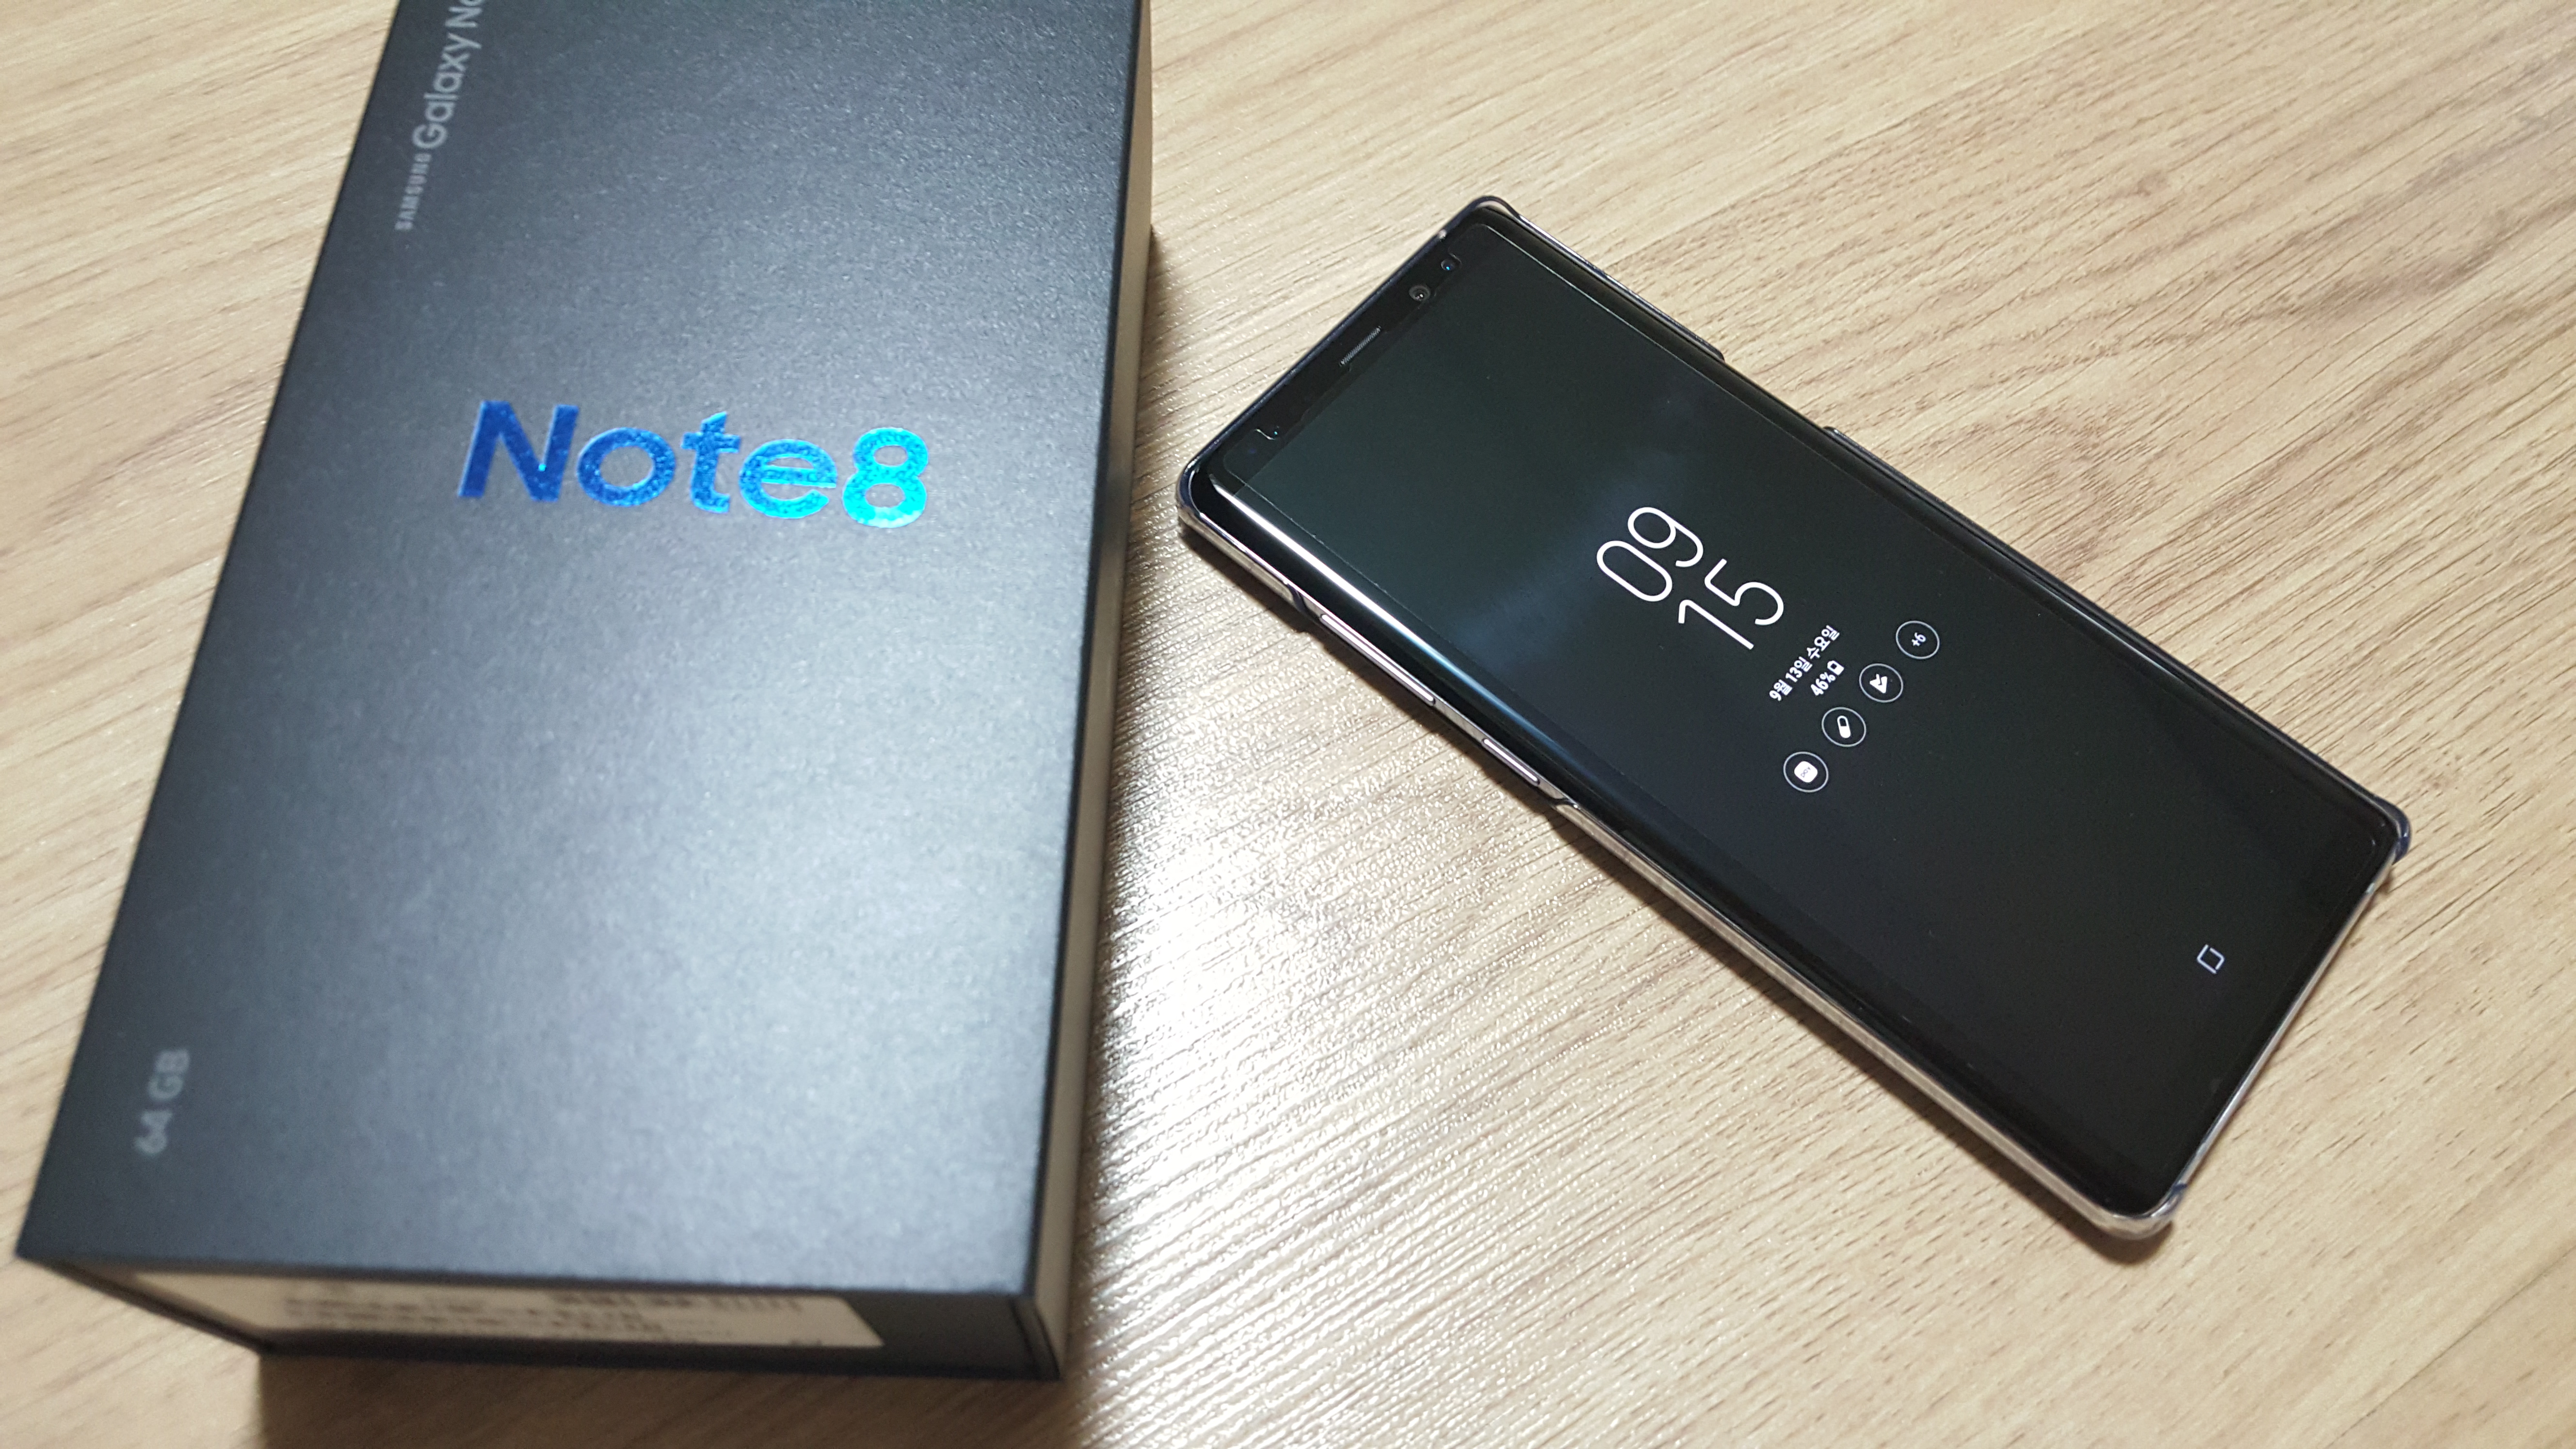 Galaxy Note8 64 GB SIMフリー